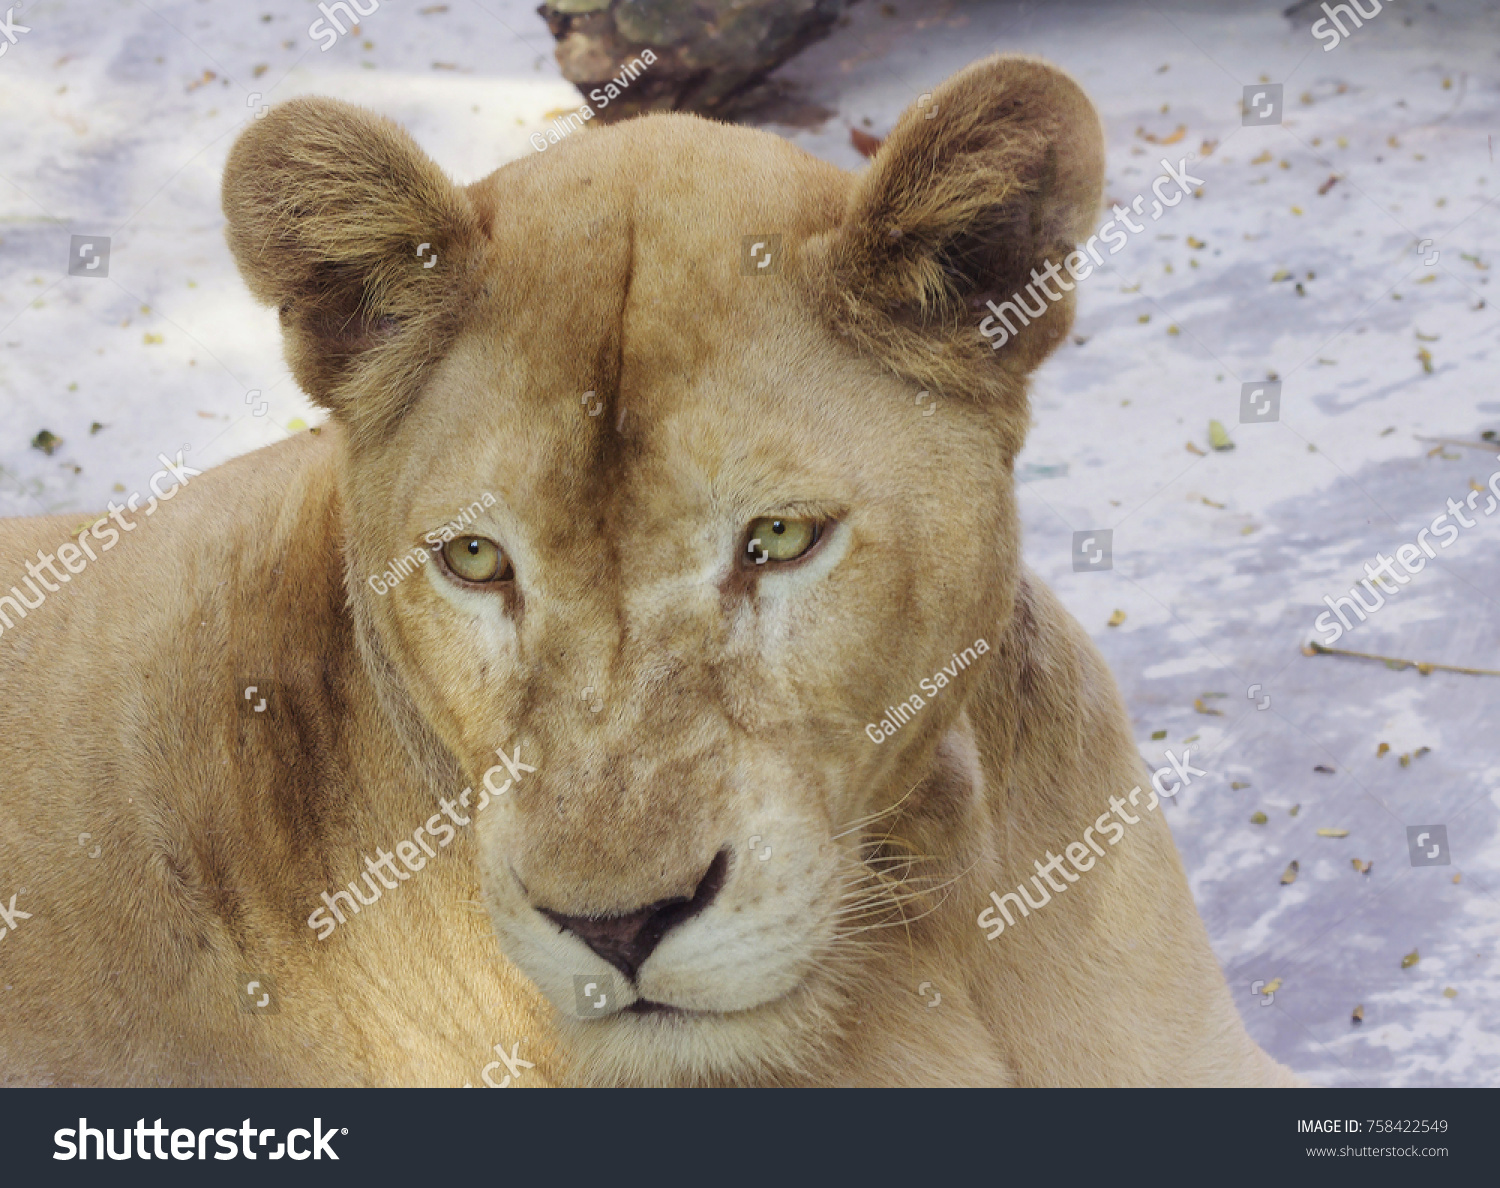 excelleren Snelkoppelingen erwt Leo Lioness Leo Kind Predatory Mammals Stock Photo (Edit Now) 758422549